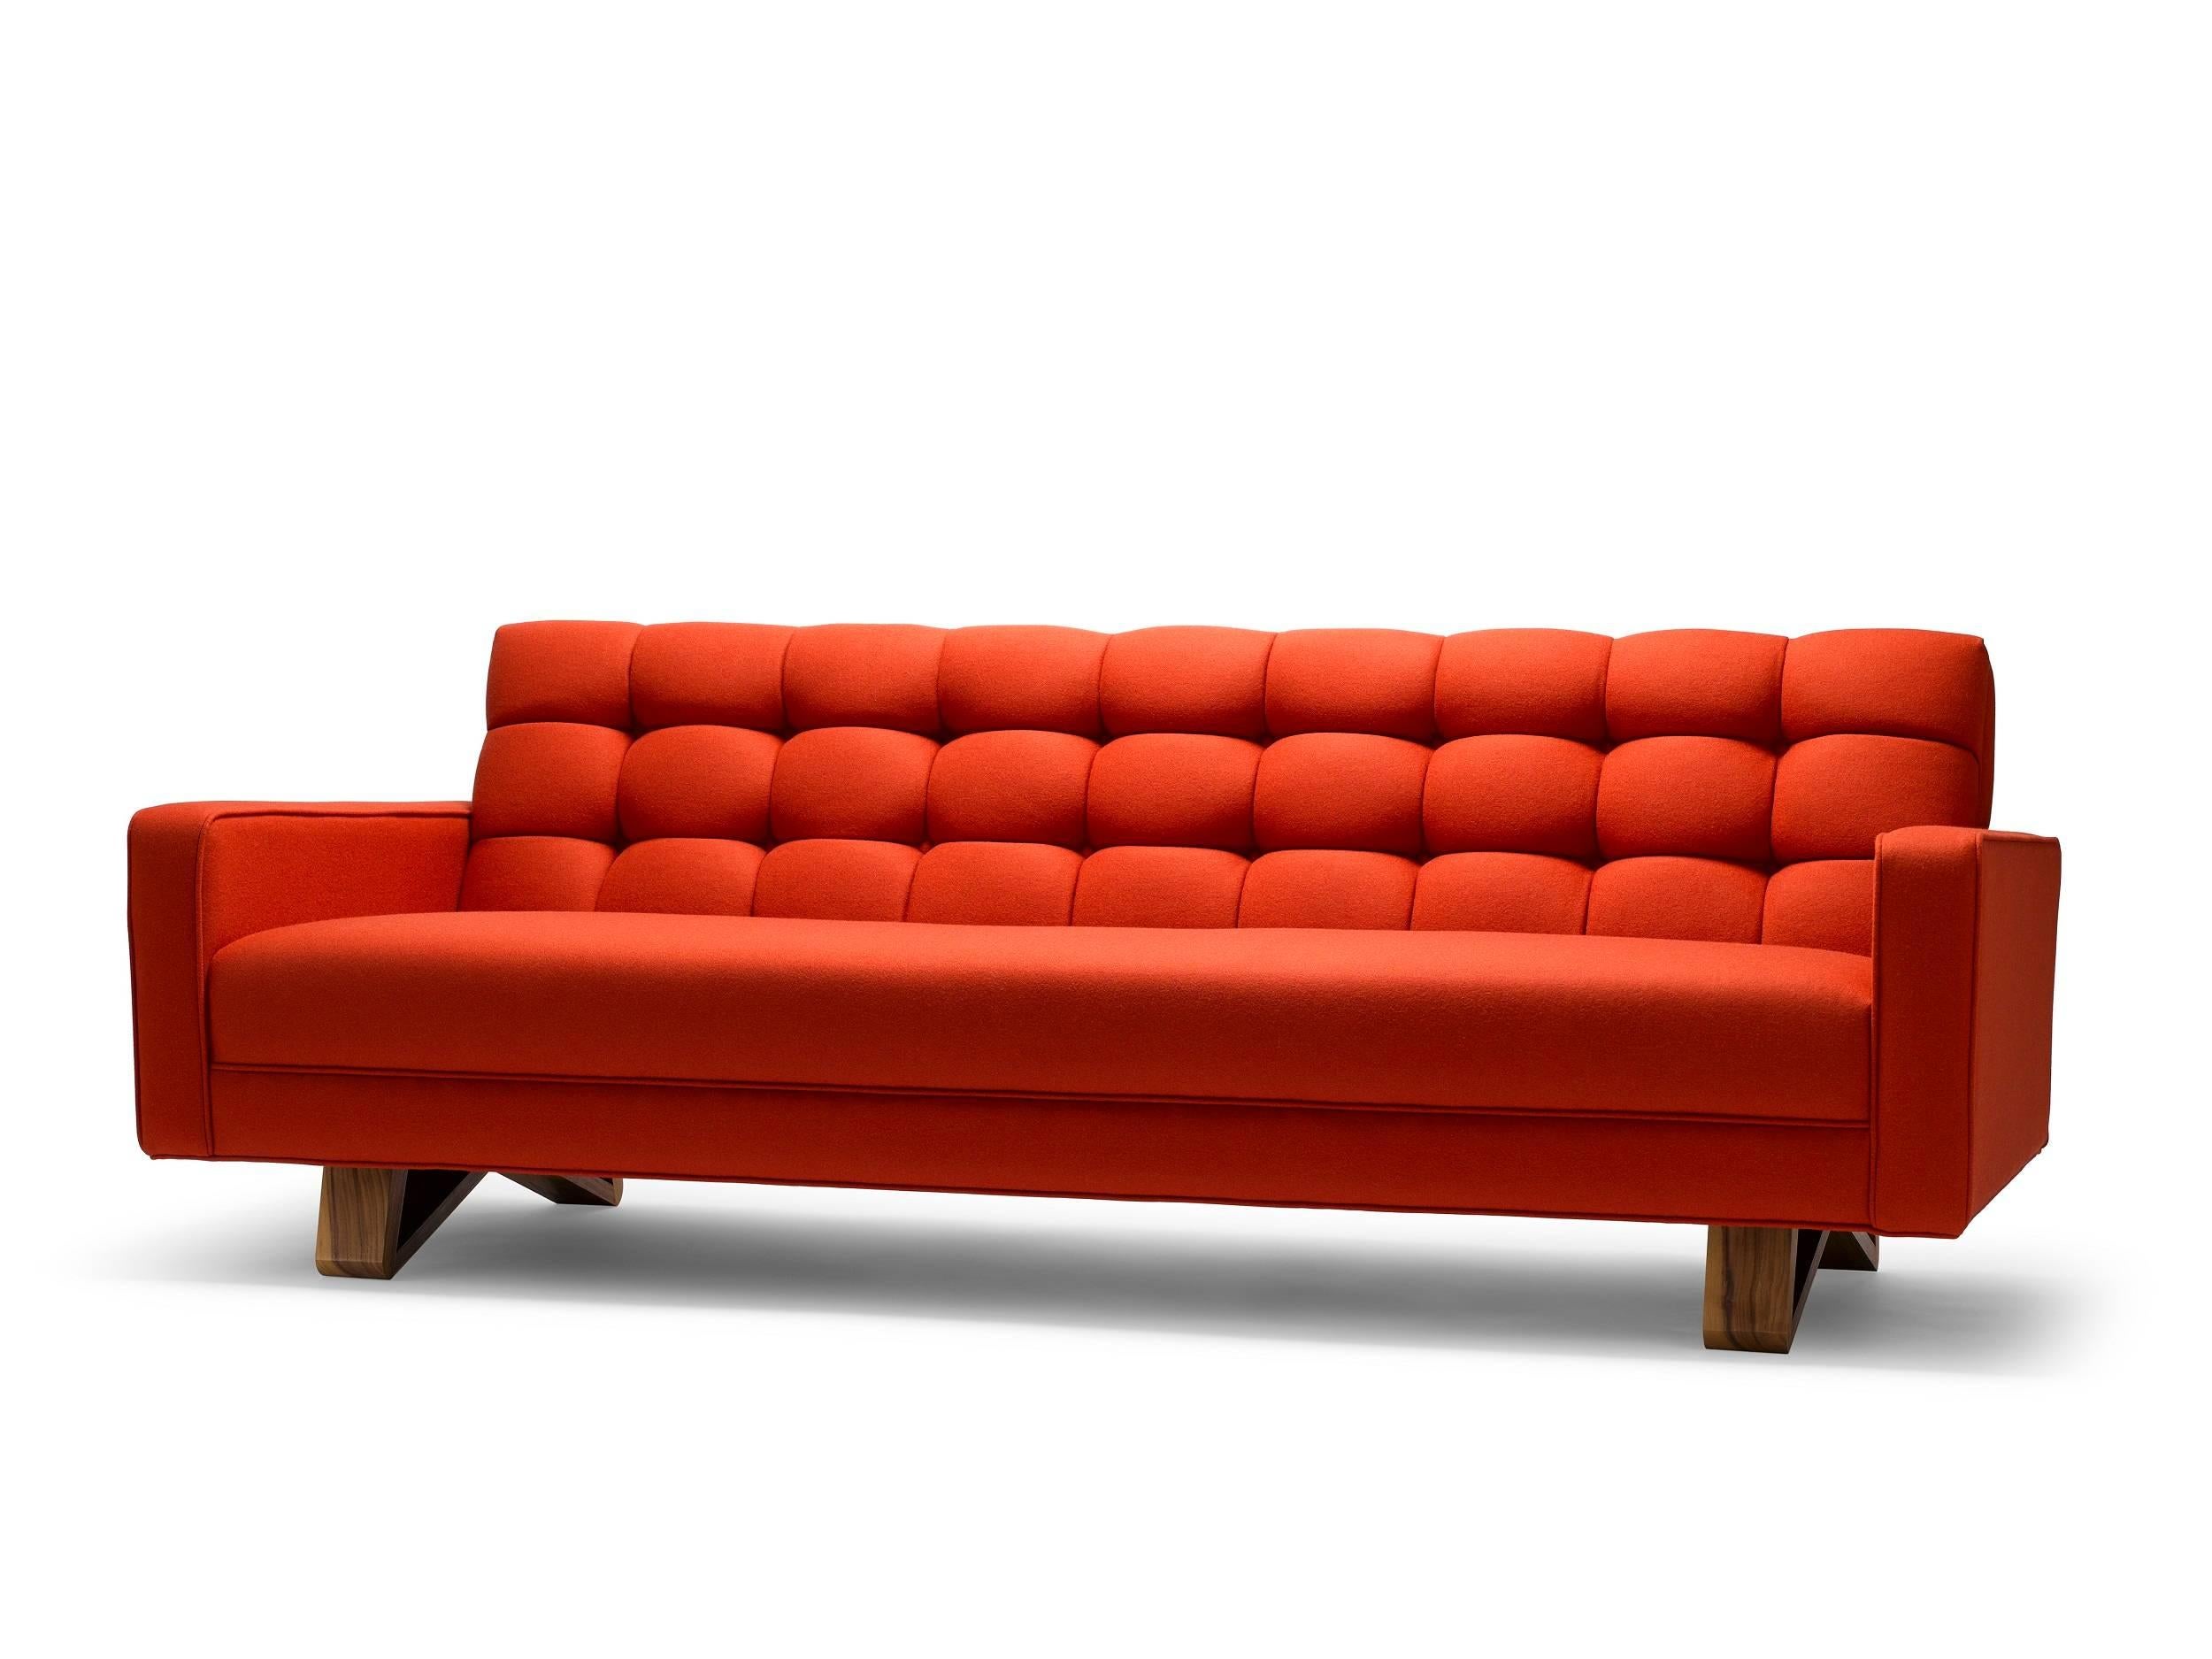 Das Adoni-Sofa ist ein auffälliges und wunderschönes Möbelstück mit Biskuit-Tufting, das die hohe Kunst des zeitgenössischen Handwerks demonstriert. Hier abgebildet: Gepolstert in Moon Melton Strand, mit Beinen aus naturgeöltem Nussbaum. Für dieses